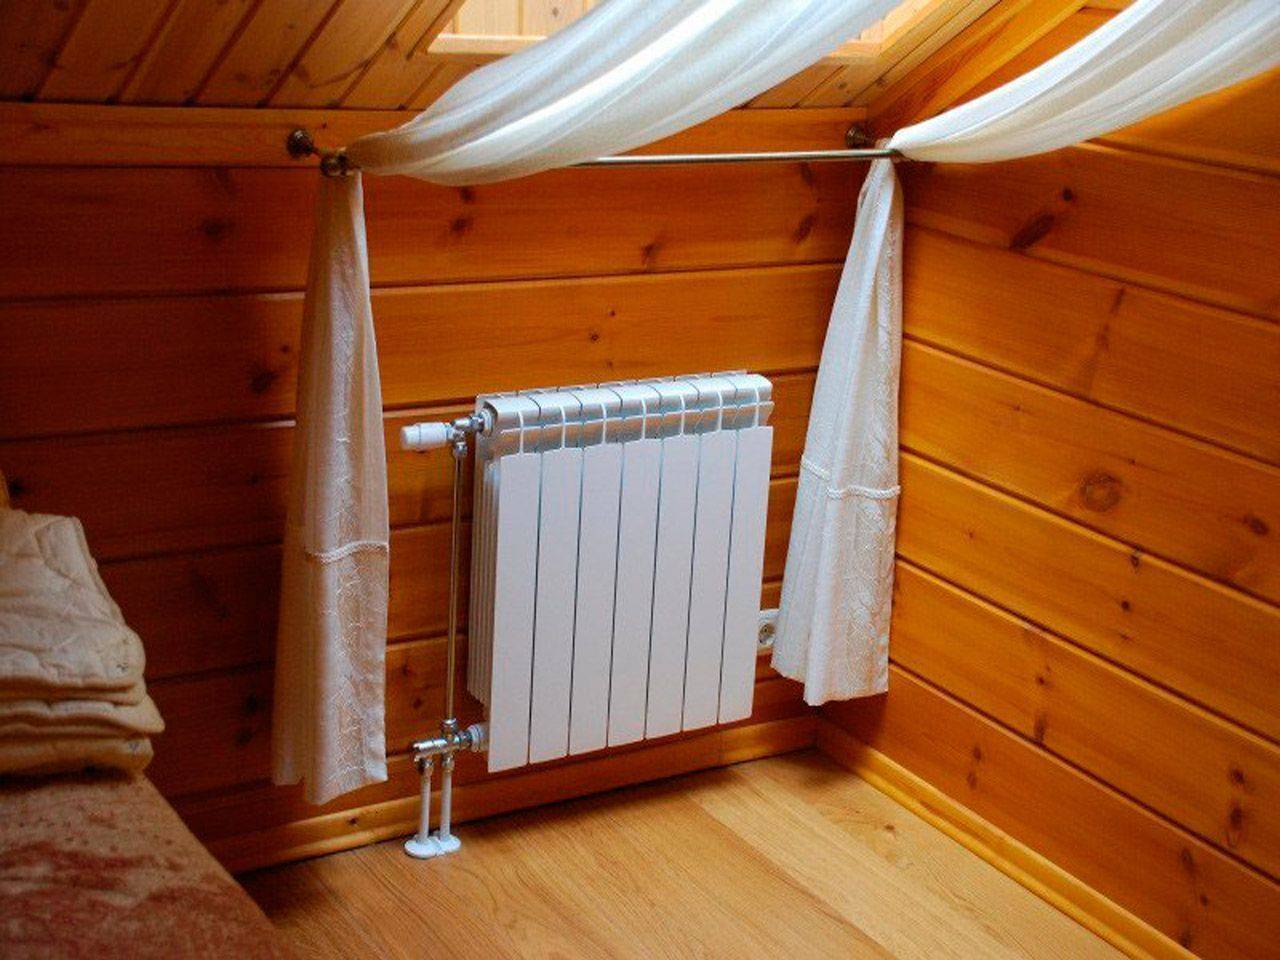 Приехать на выходные и не замерзнуть в холодном доме: как организовать отопление на даче?